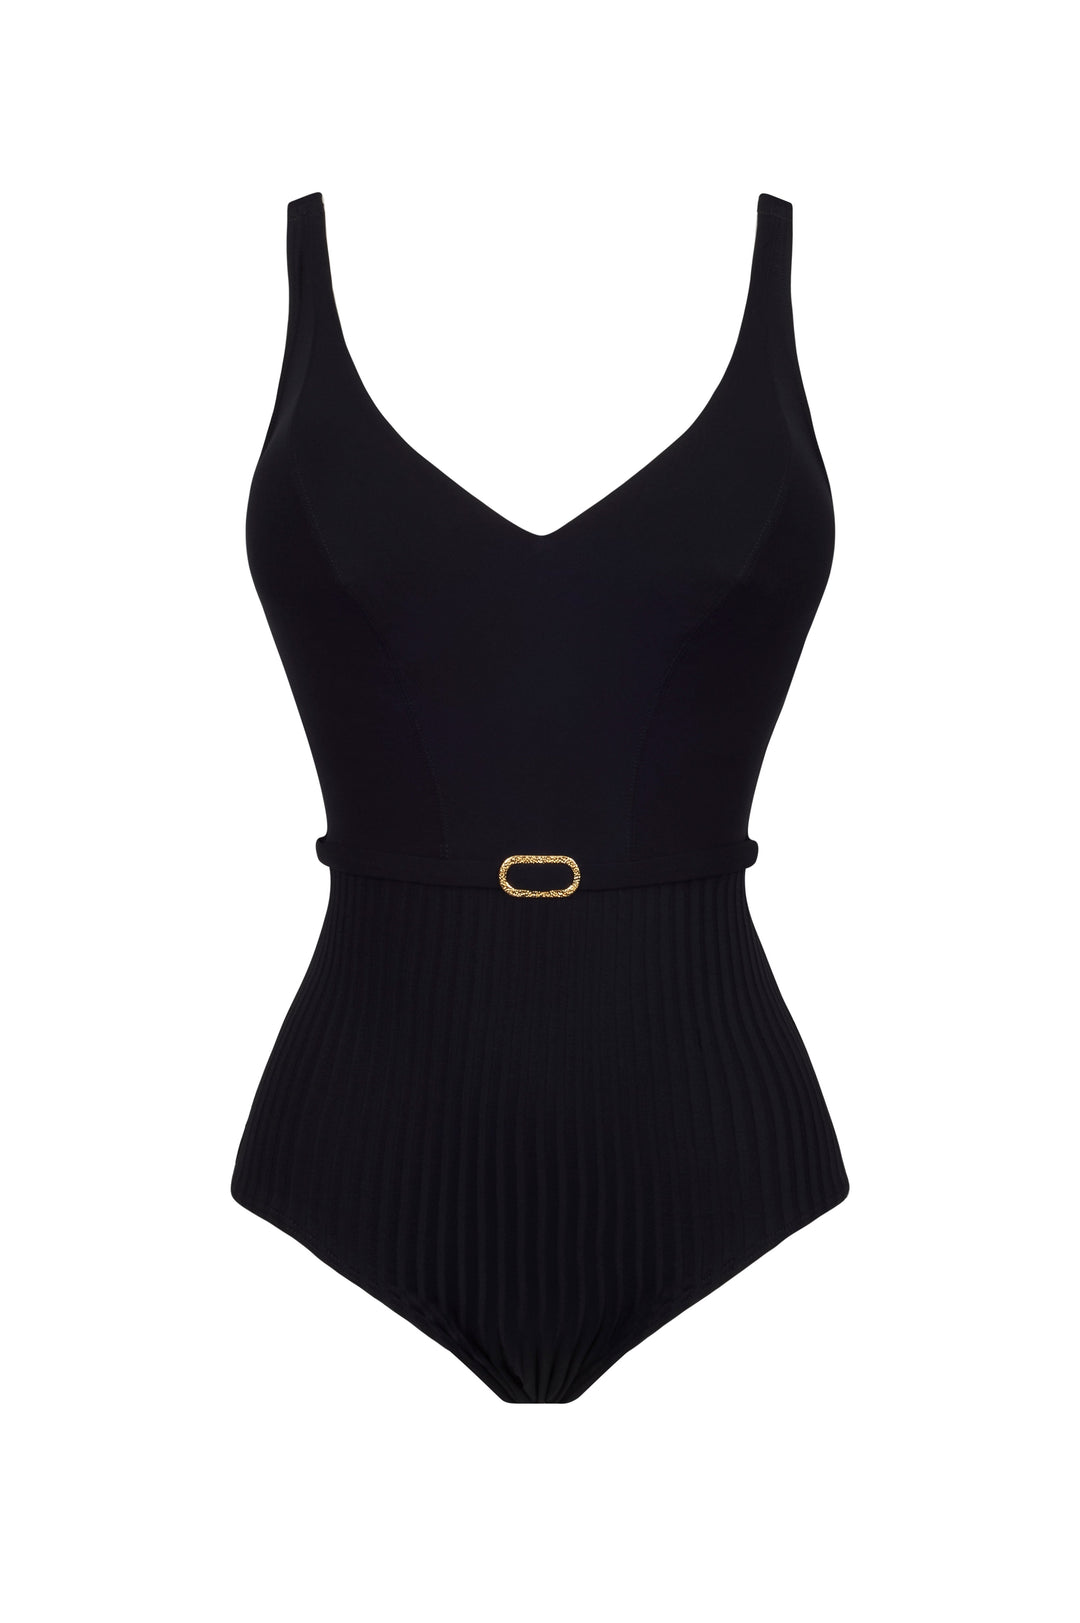 Empreinte - Iconic Underwire V-Neck Swimsuit Black Plunge Swimsuit Empreinte Swimwear 